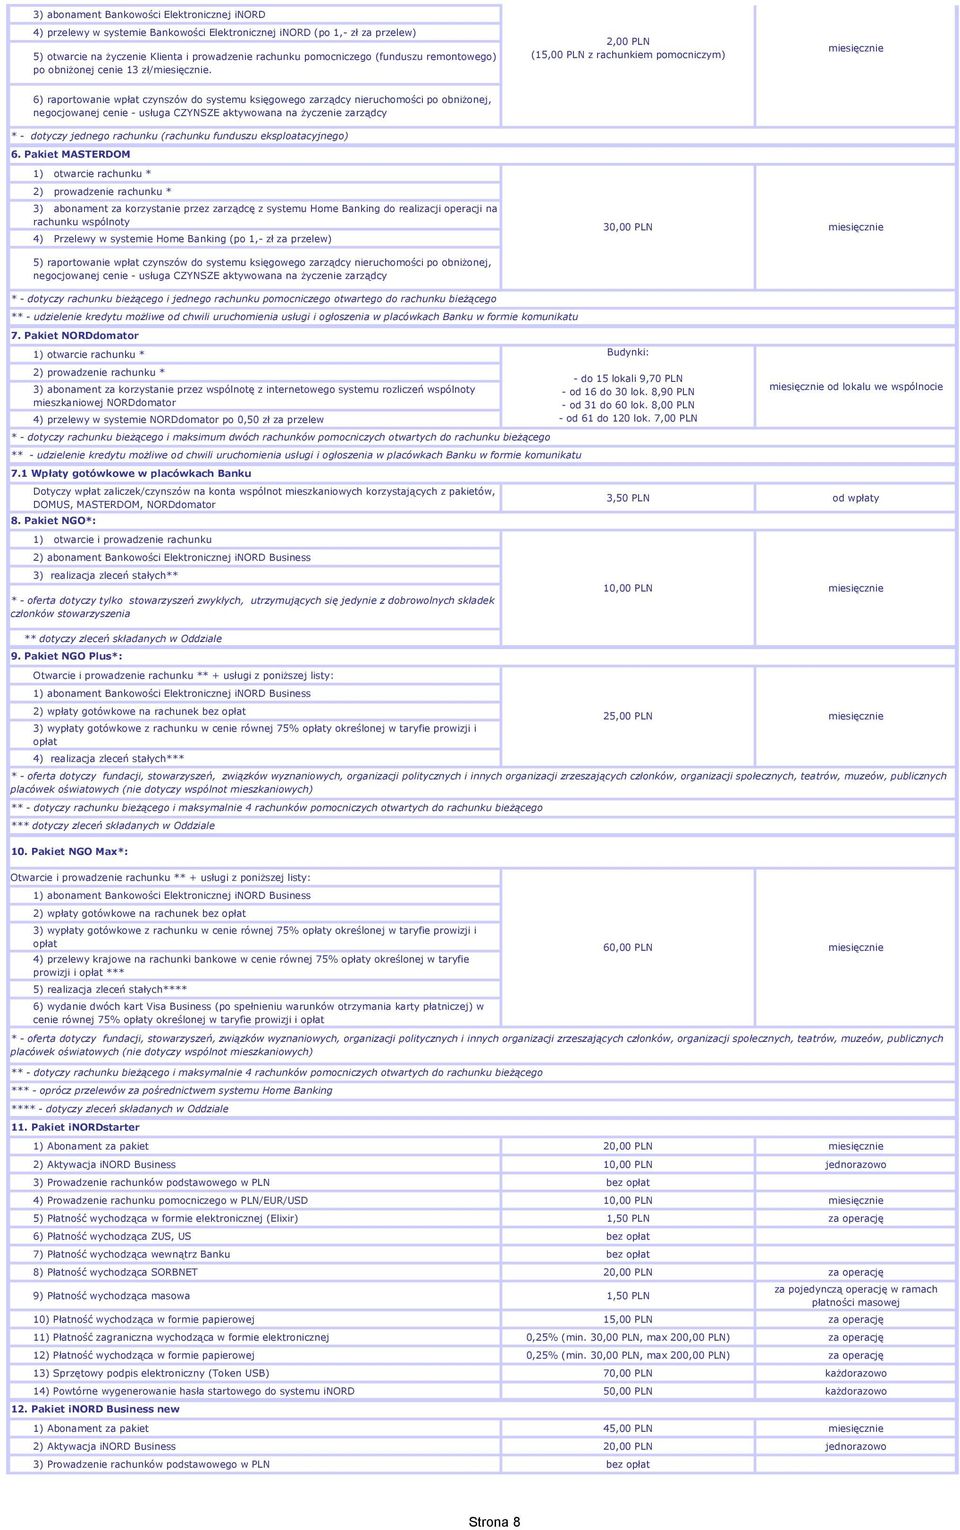 2,00 PLN (15,00 PLN z rachunkiem pomocniczym) 6) raportowanie wpłat czynszów do systemu księgowego zarządcy nieruchomości po obniżonej, negocjowanej cenie - usługa CZYNSZE aktywowana na życzenie